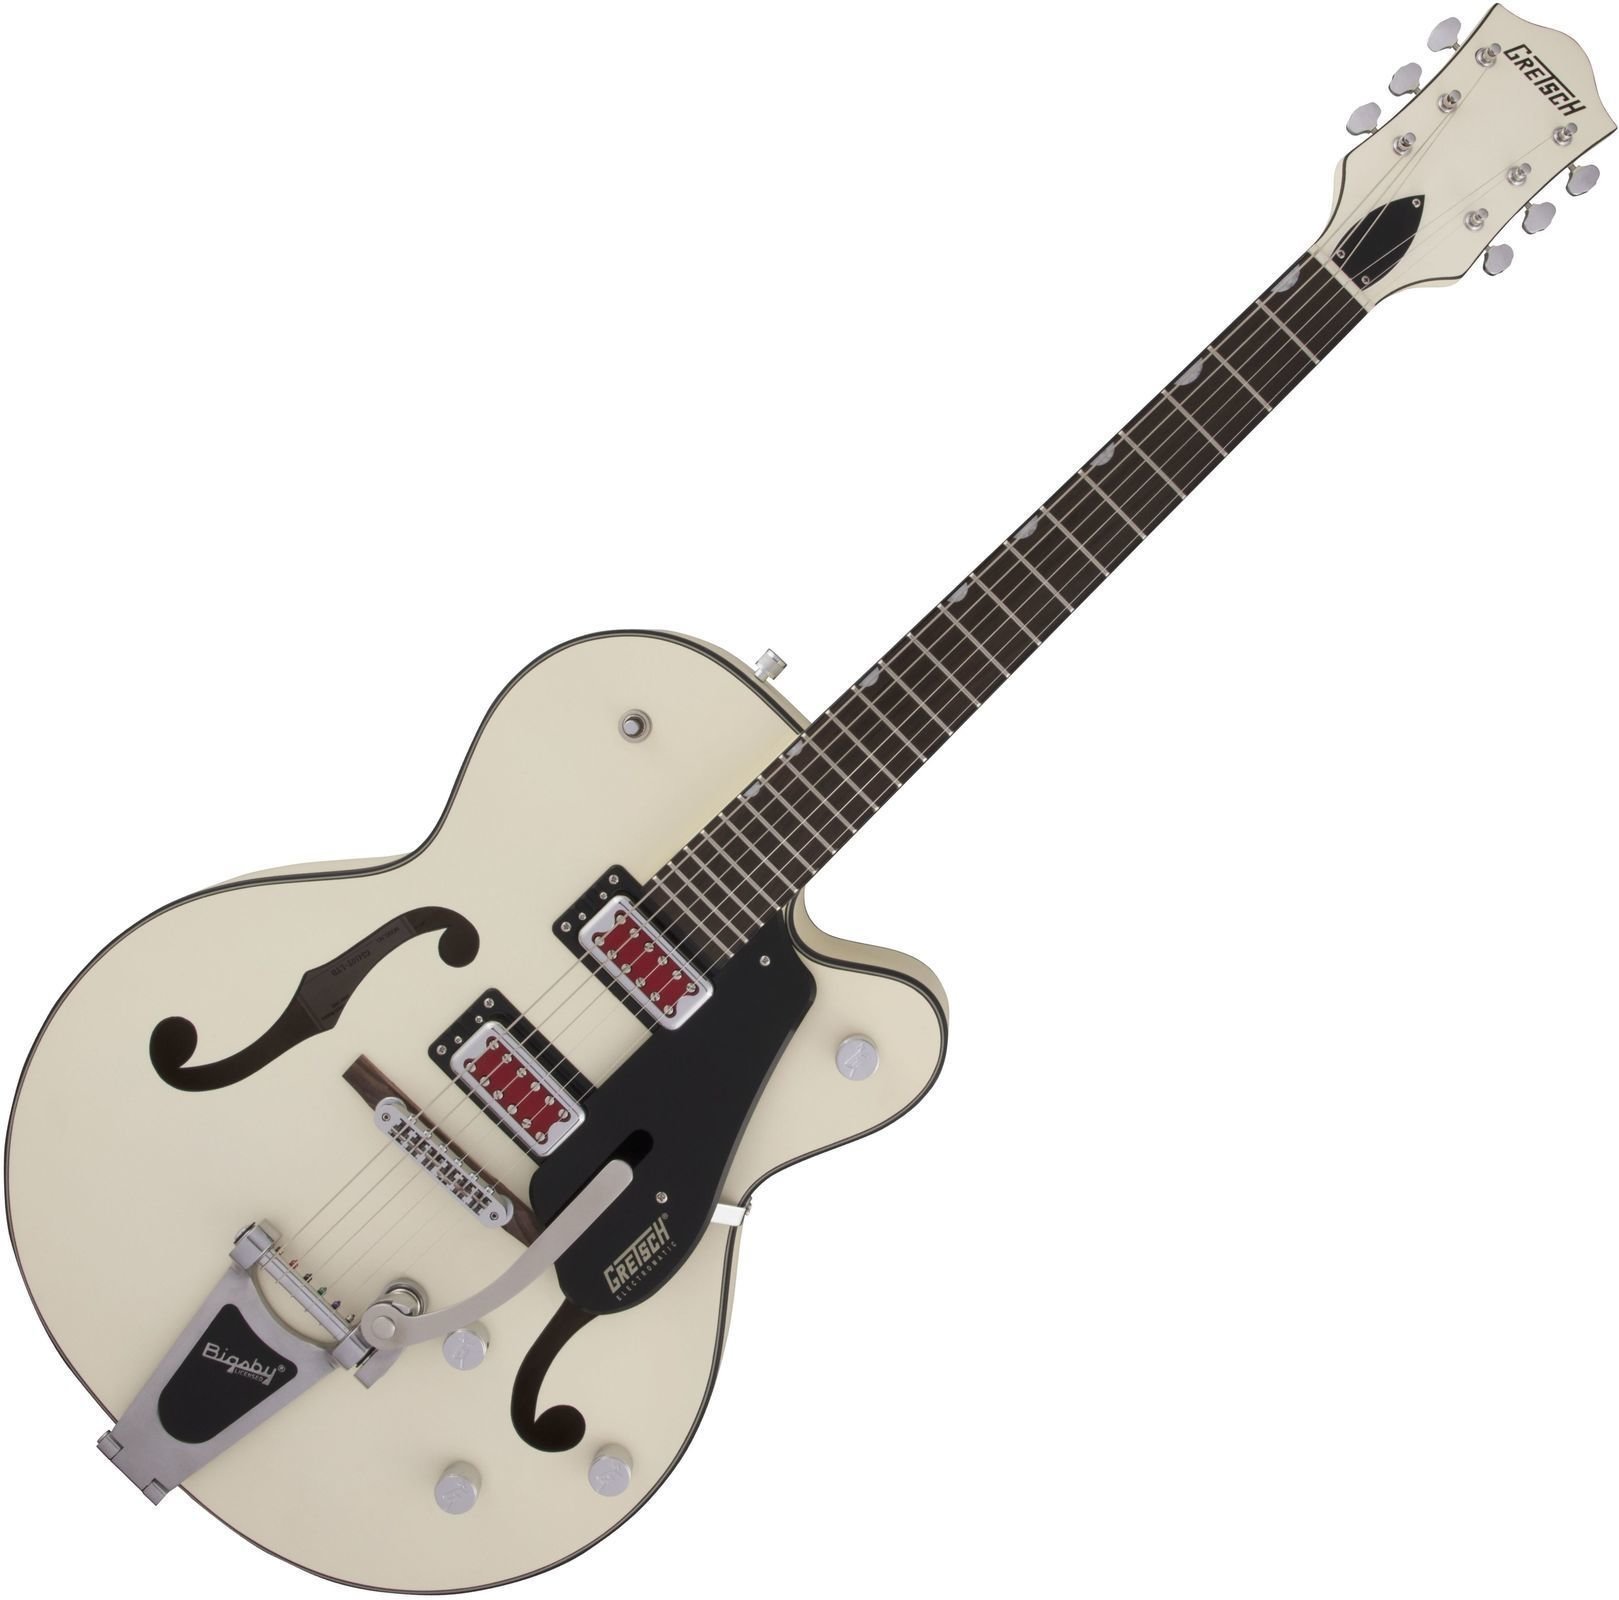 Guitarra semi-acústica Gretsch G5410T Electromatic SC RW Matte Vintage White